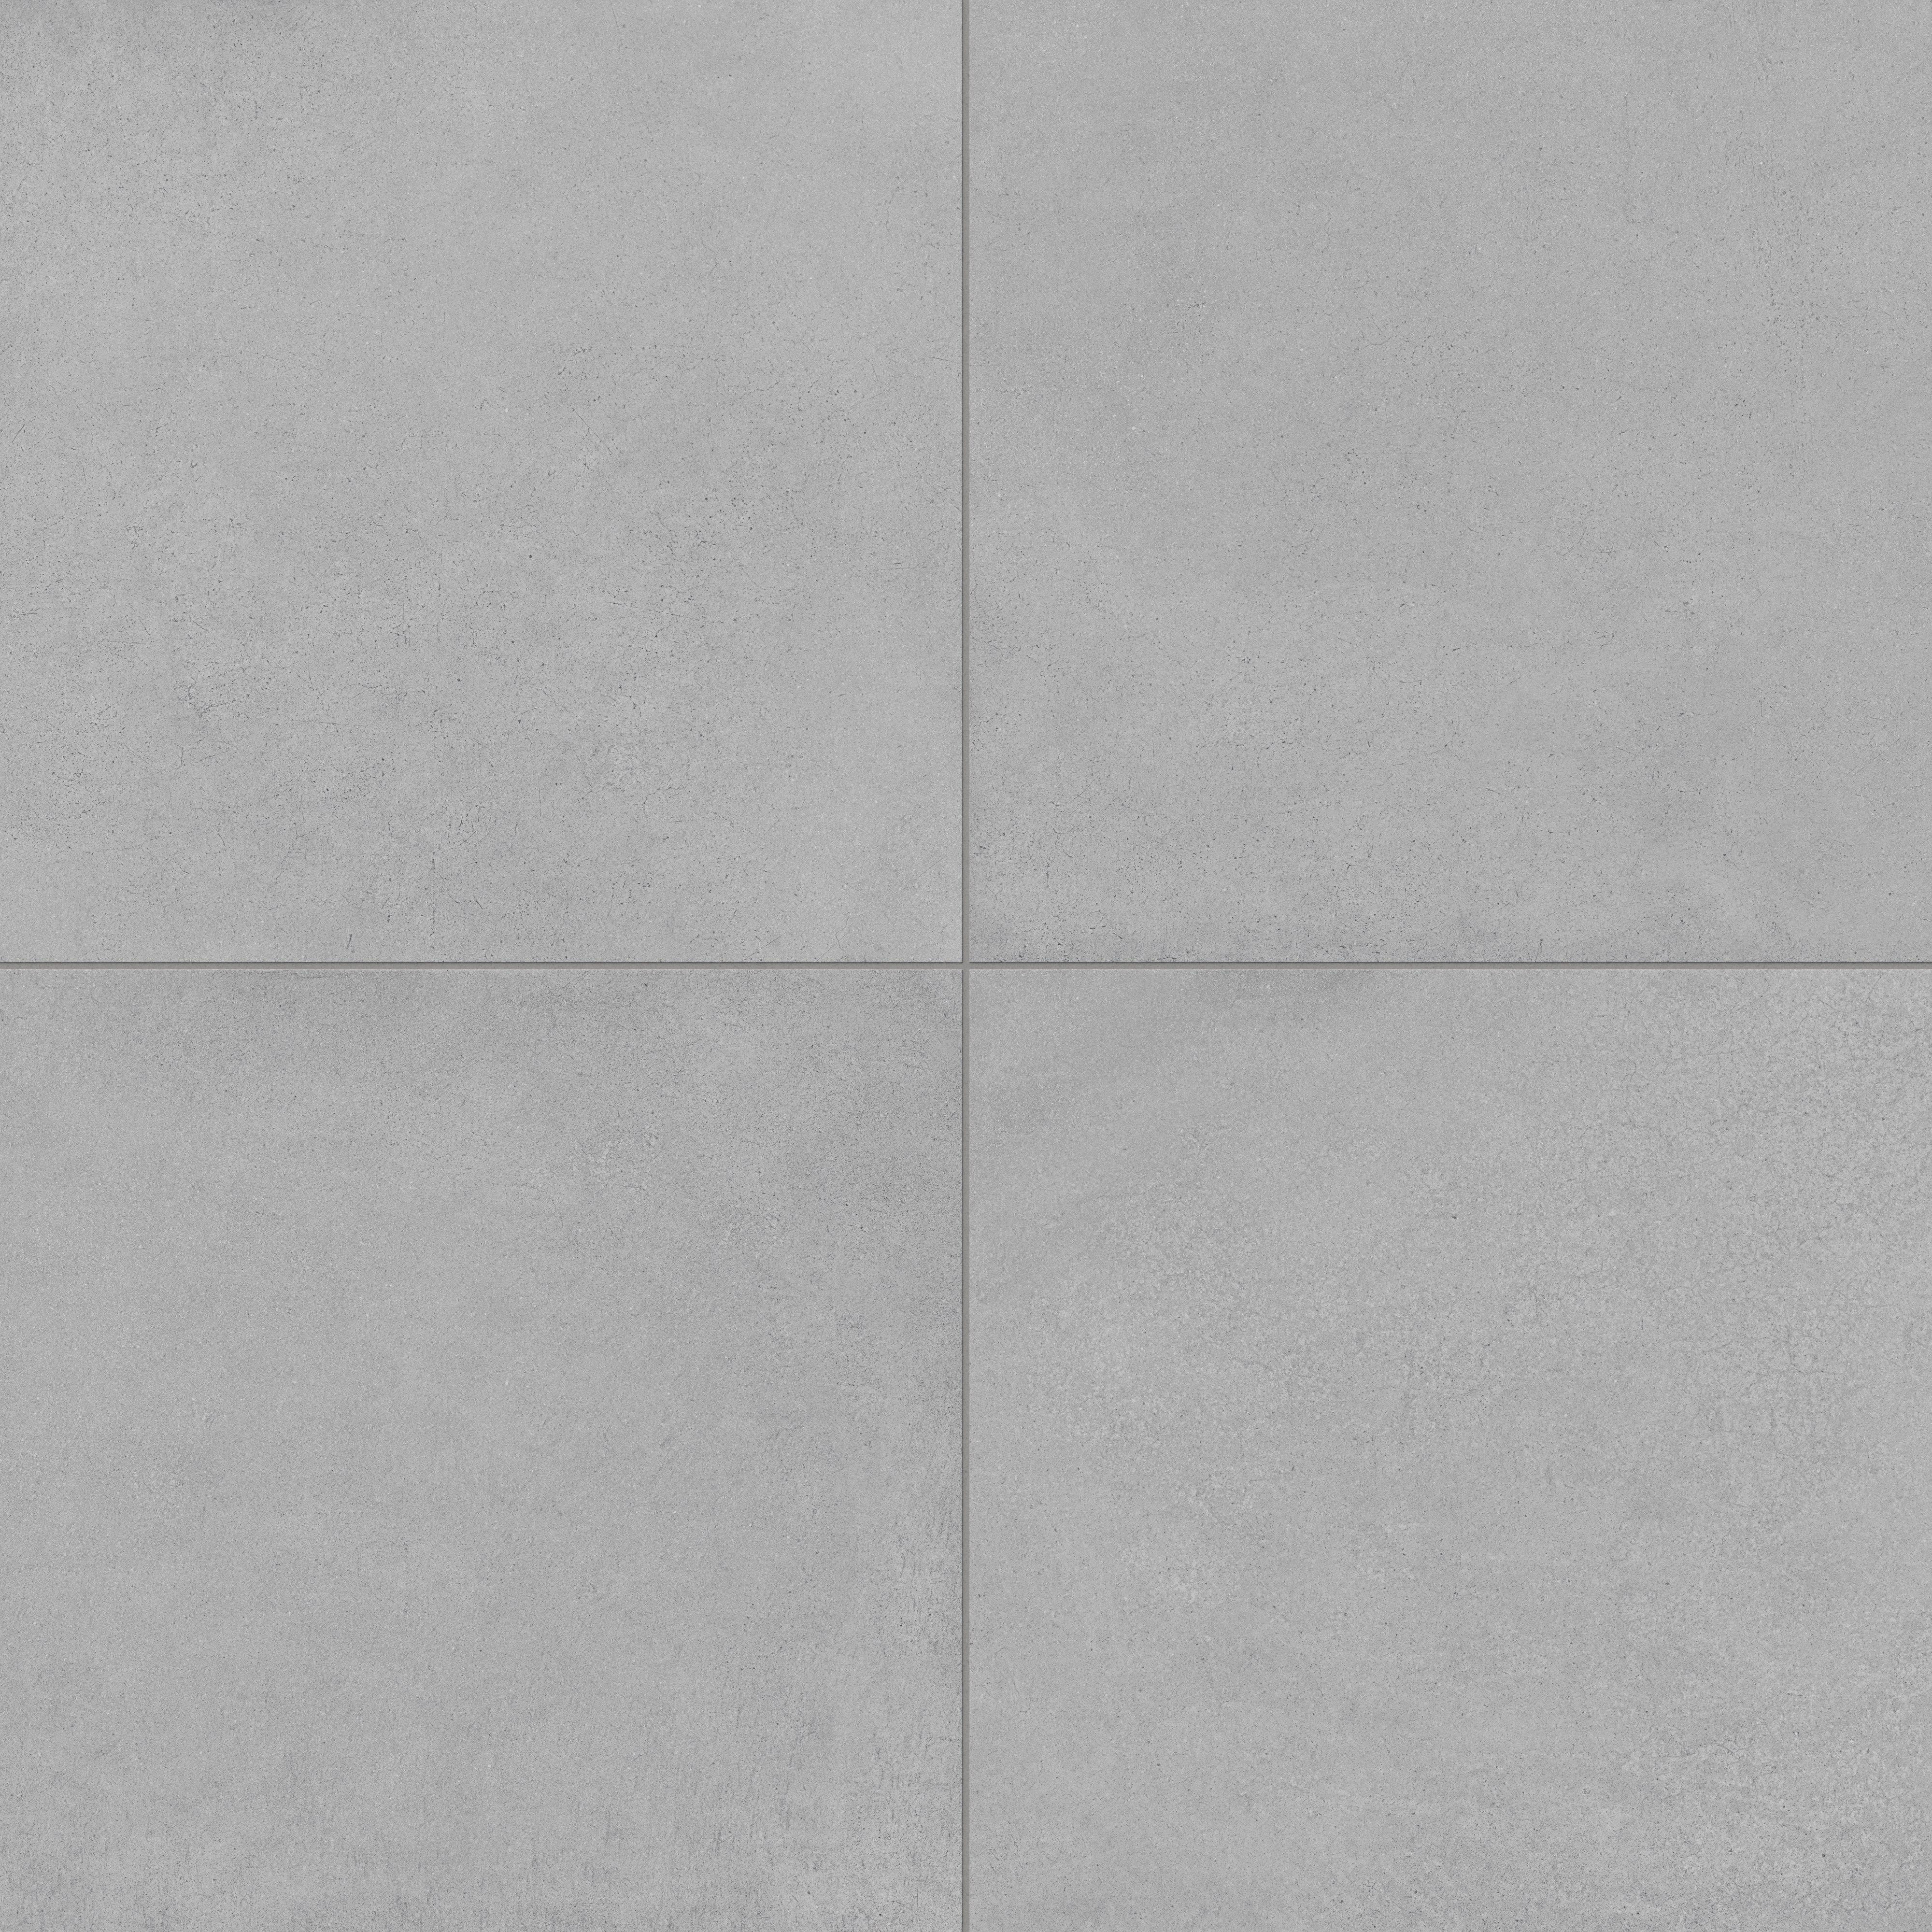 Palmer 24x24 Matte Porcelain Tile in Grey